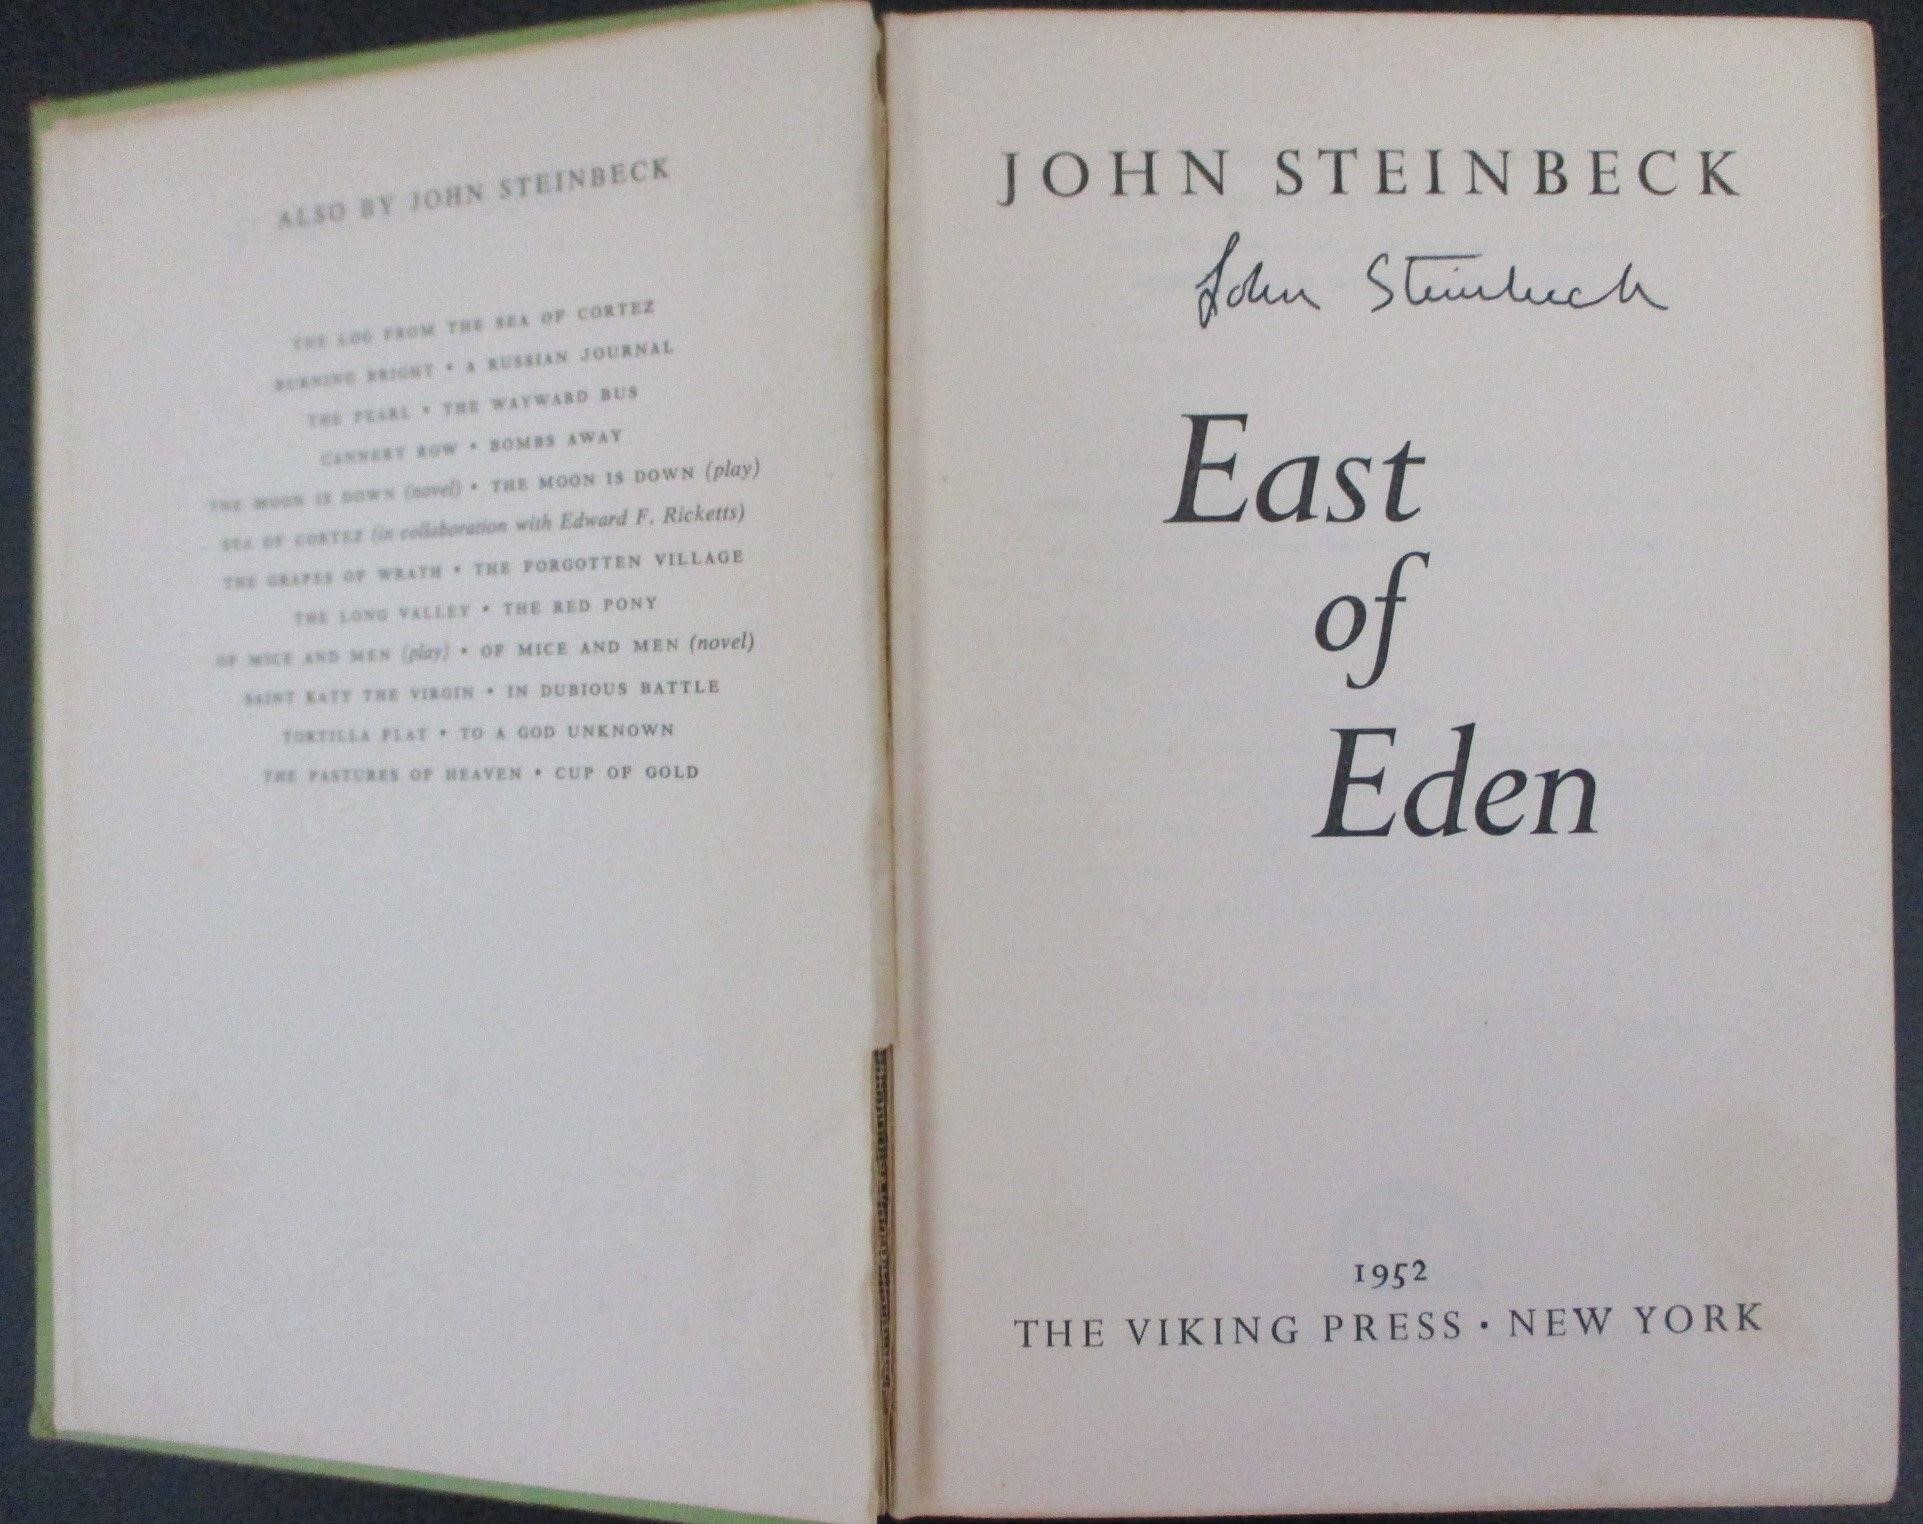 John Steinbeck Signed "East of Eden"